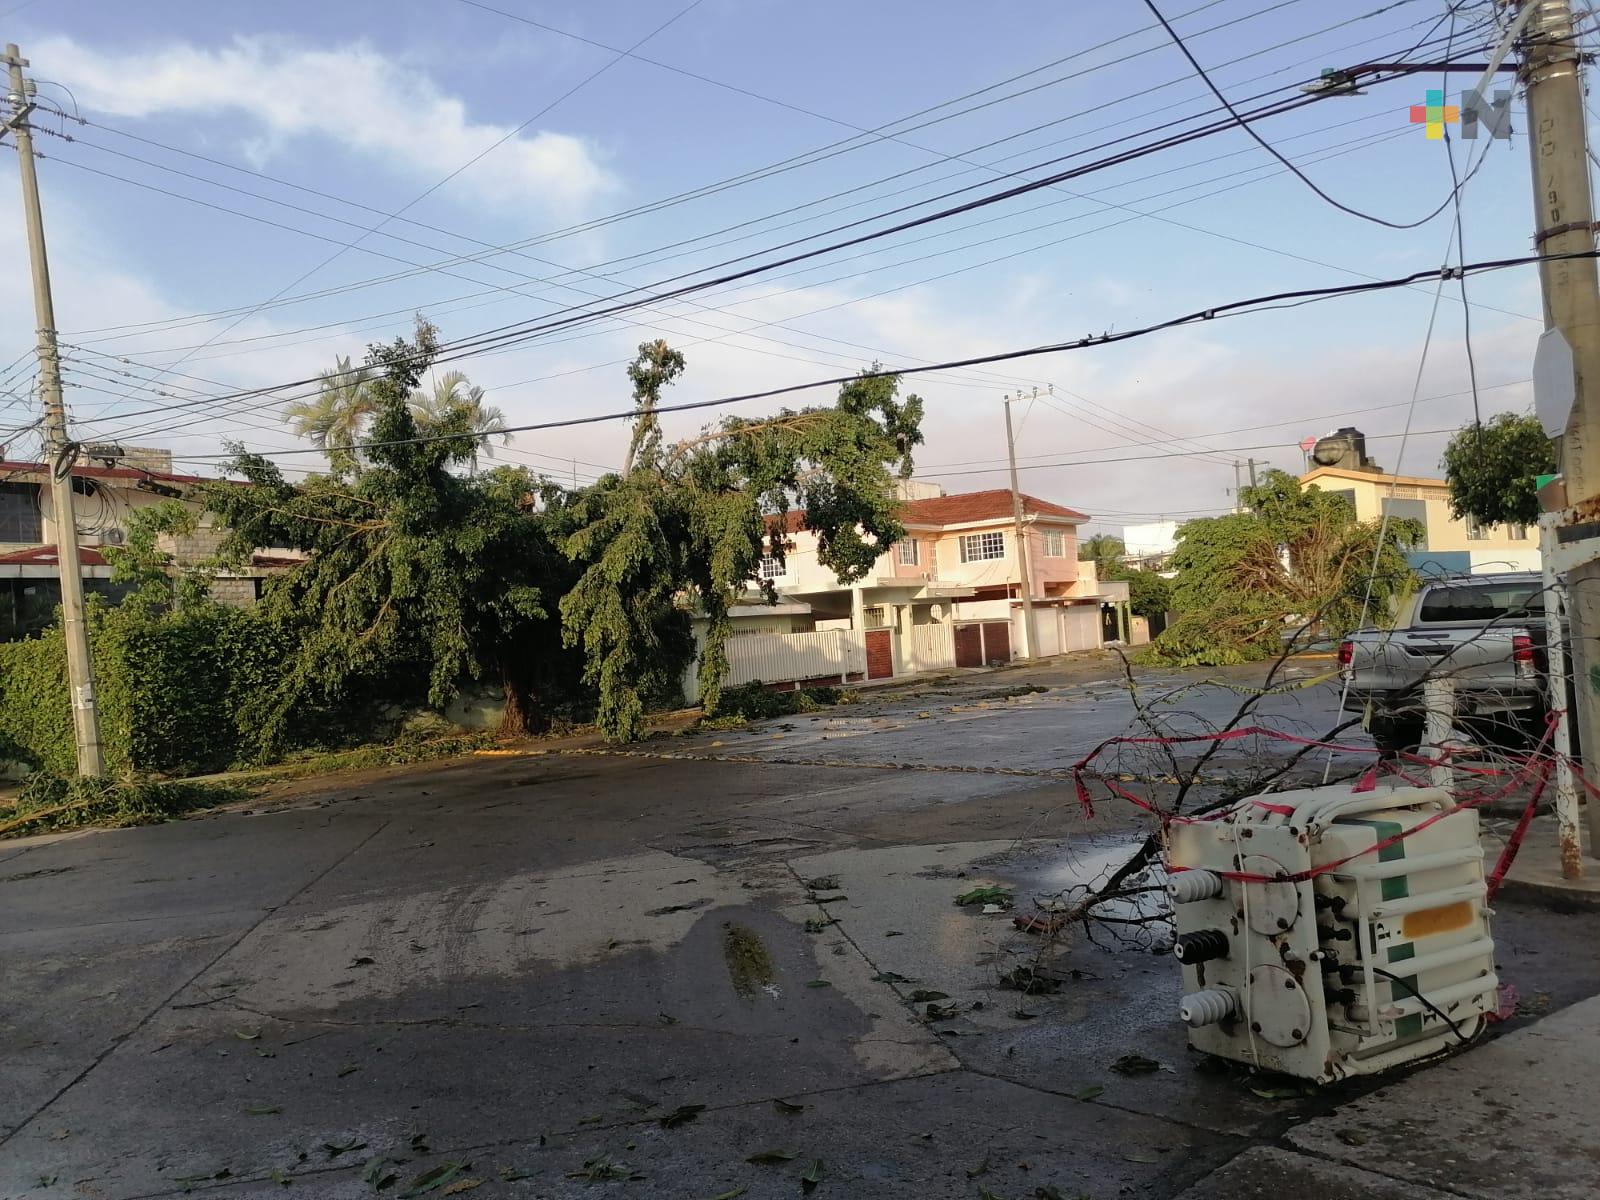 En Poza Rica, restablecidos en 80% servicios públicos afectados por huracán Grace